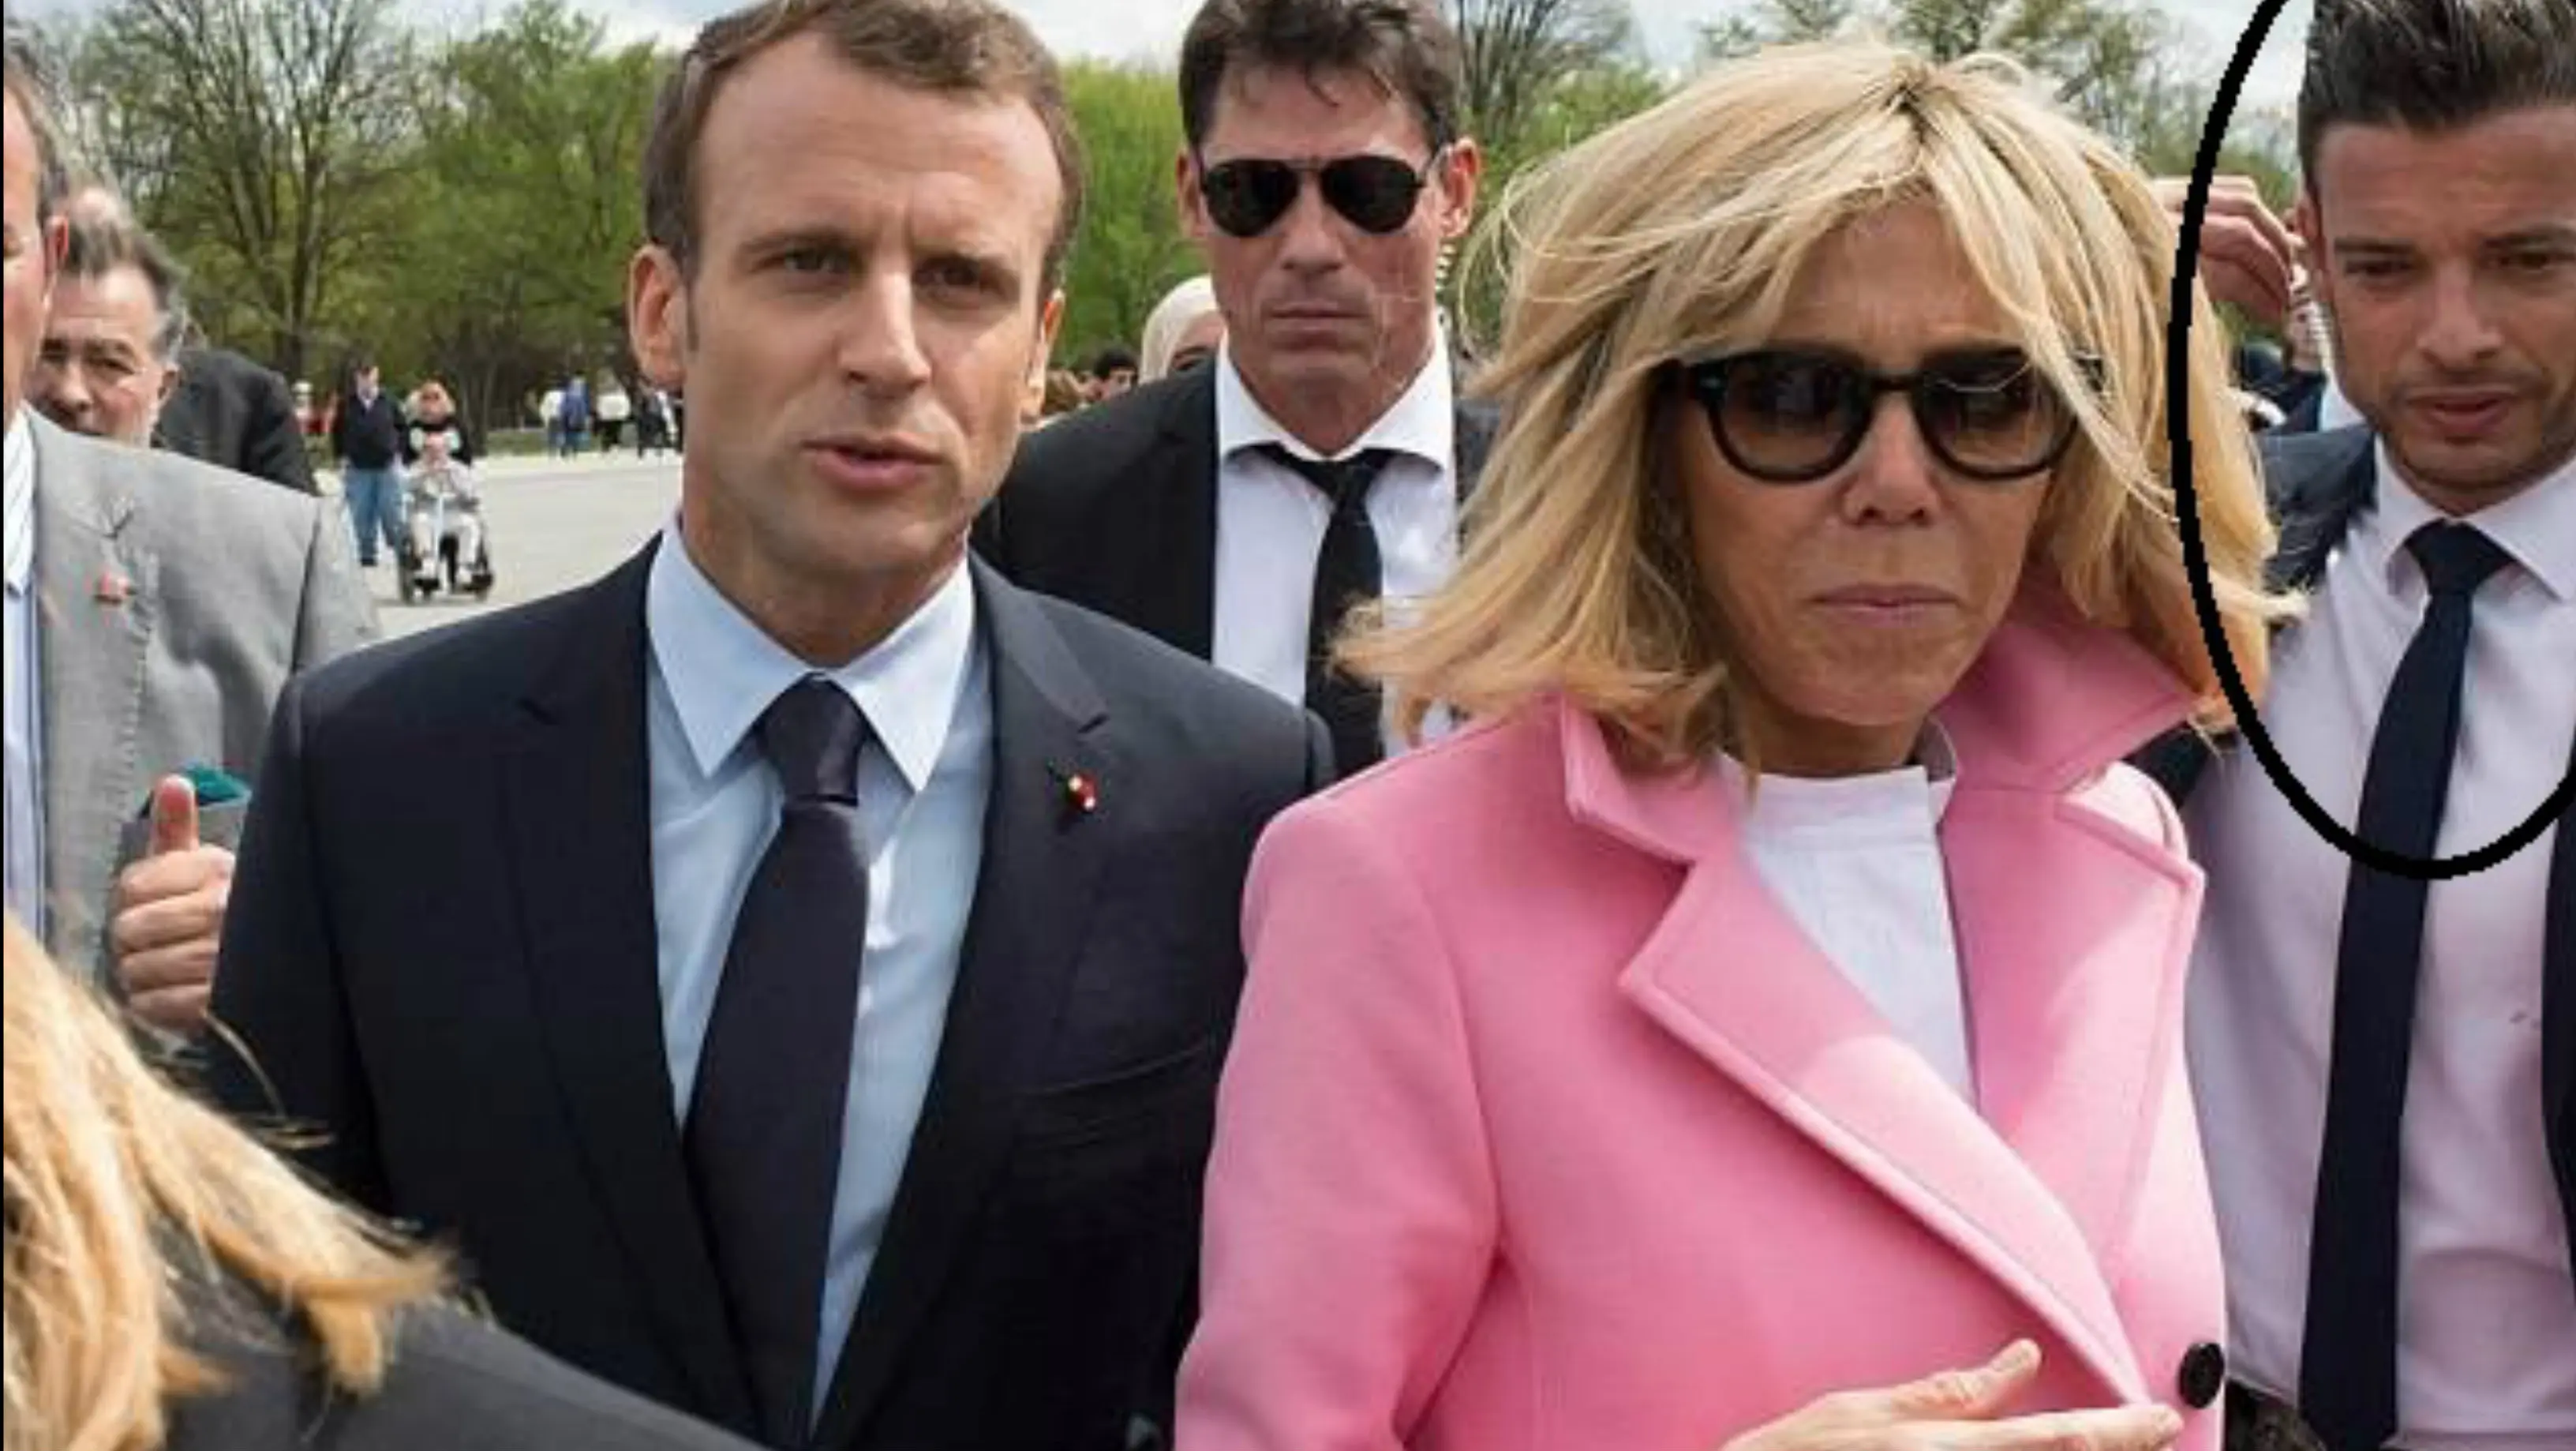 Paspampres ganteng di belakang Presiden Prancis Emmanuel Macron dan istrinya saat berkunjung ke Amerika Serikat. (AFP)